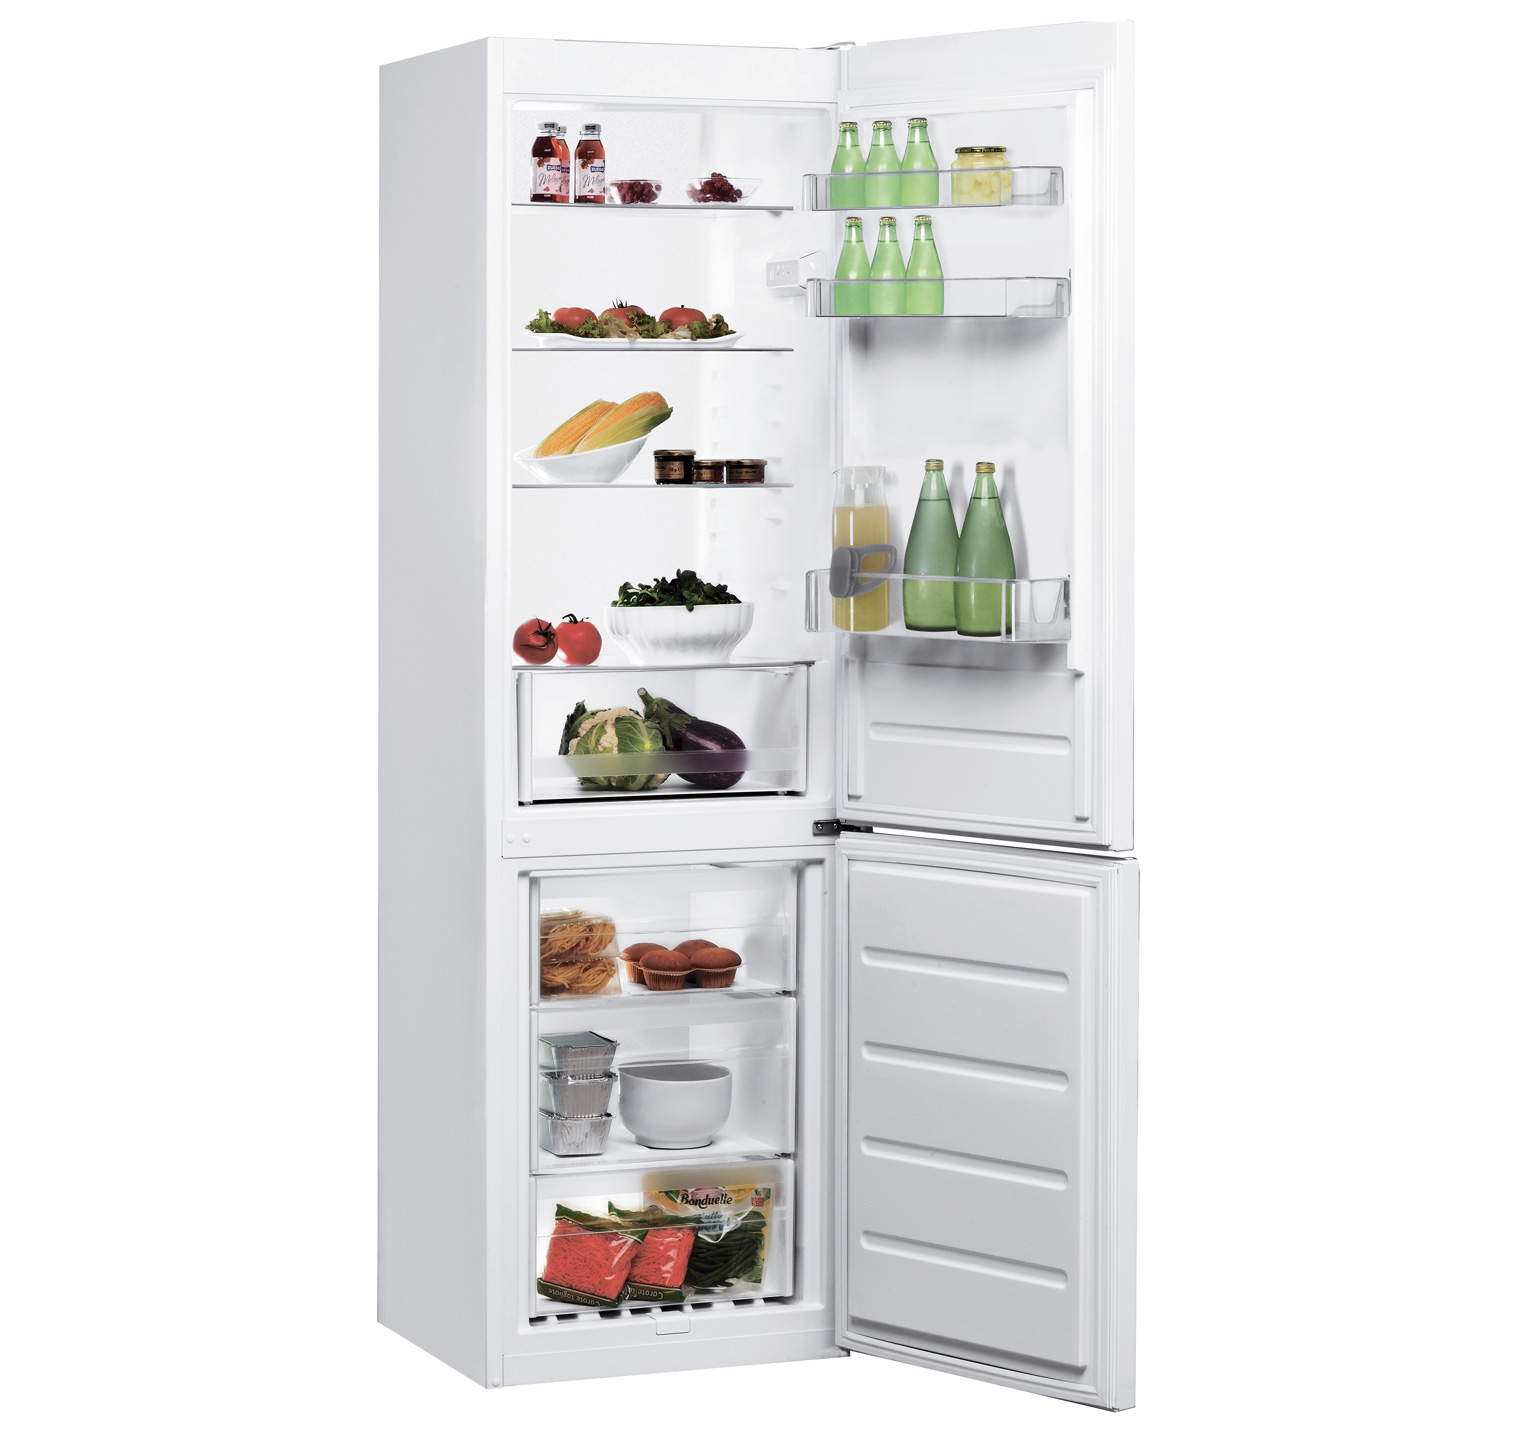 Двухкамерный холодильник INDESIT LI8 S1 W + кредит 0% на 10 мес или сертификат на 100 грн в подарок + бесплатная доставка!